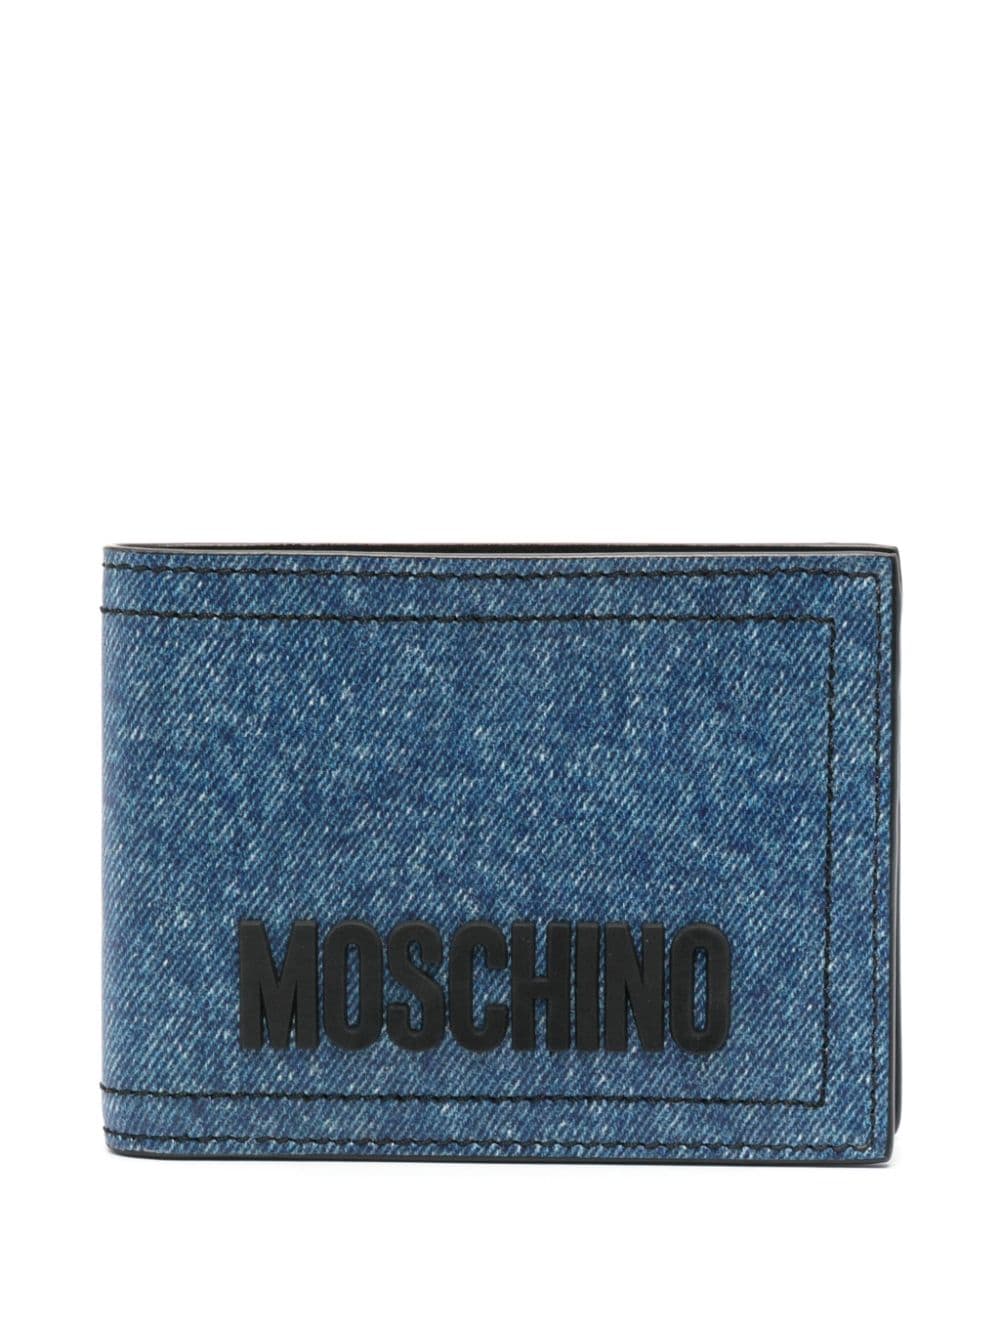 Moschino Jeans-Portemonnaie mit Logo - Blau